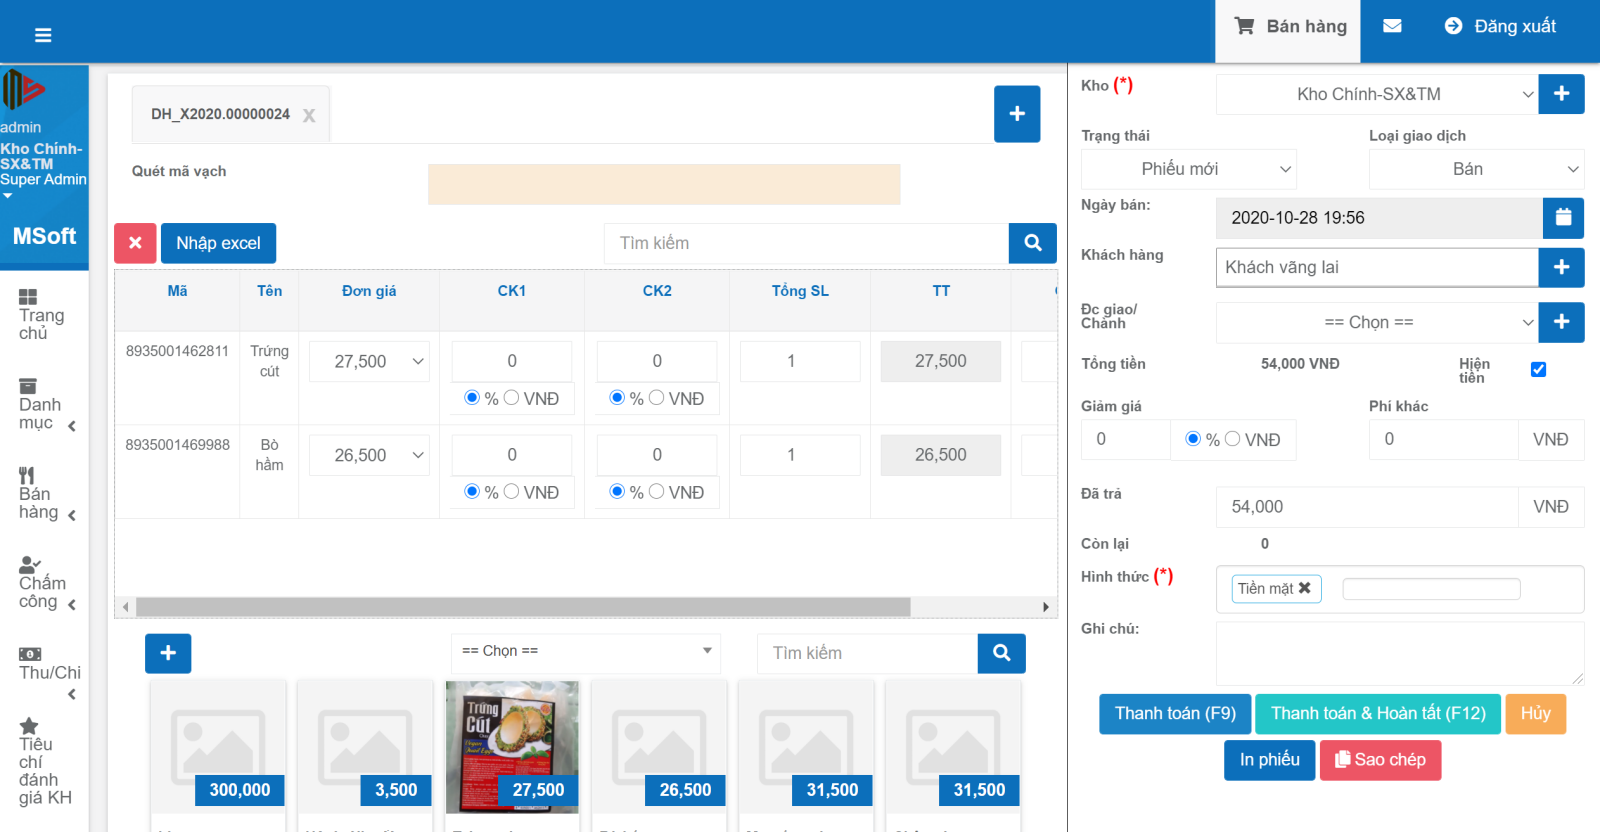 Triển khai phần mềm quản lý bán hàng cho nhà hàng tại Biên Hòa